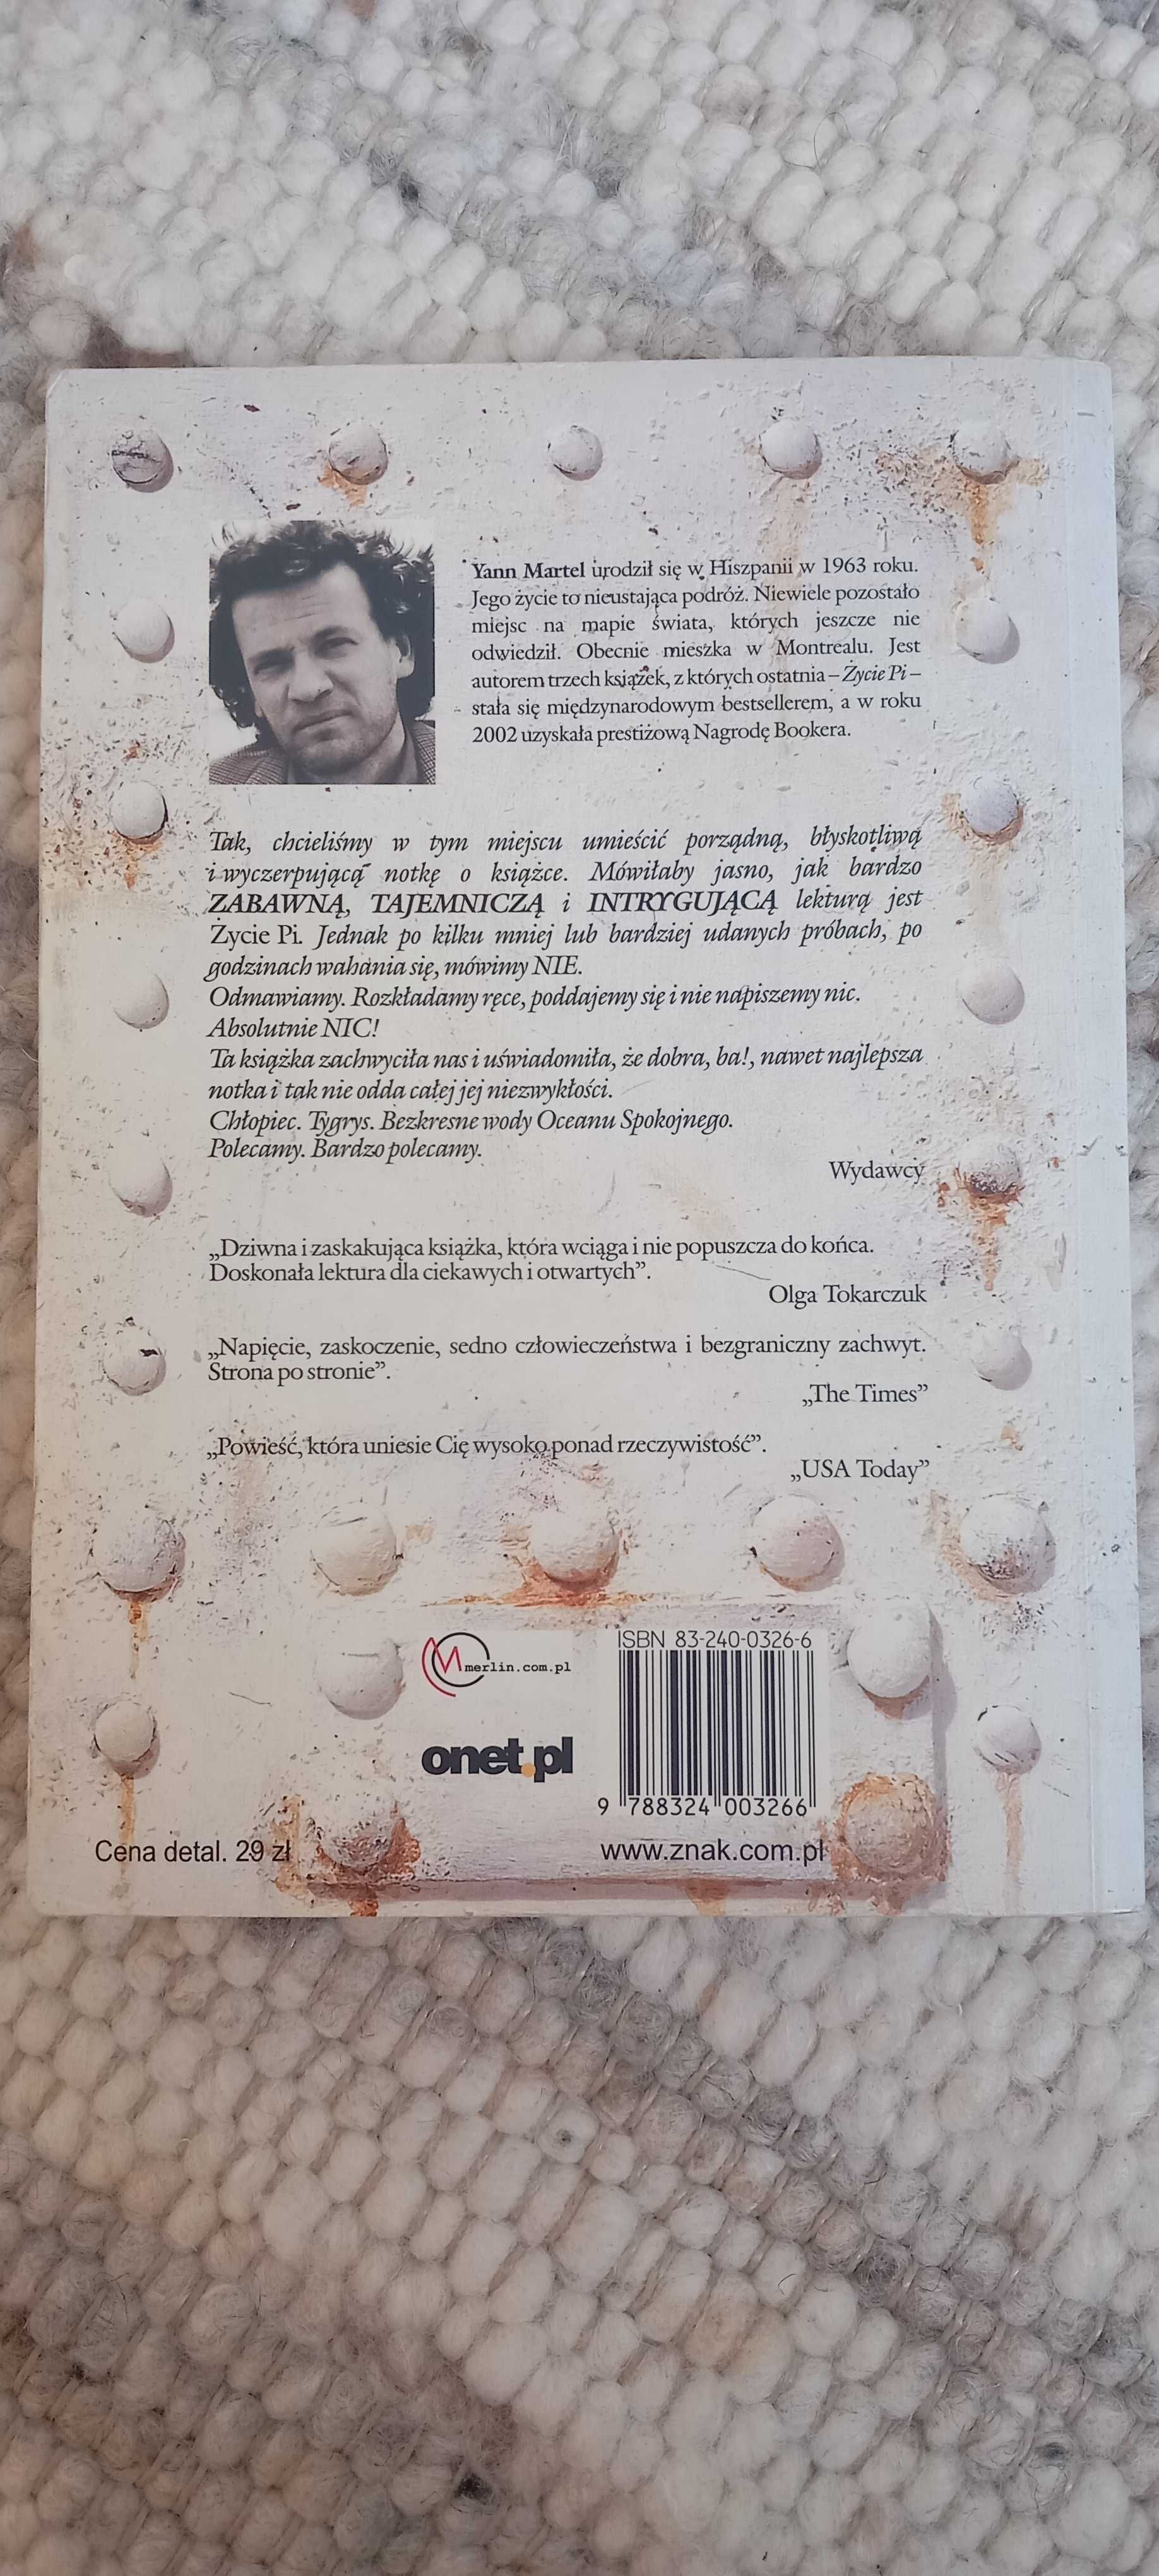 Książka "Życie Pi" Yann Martel